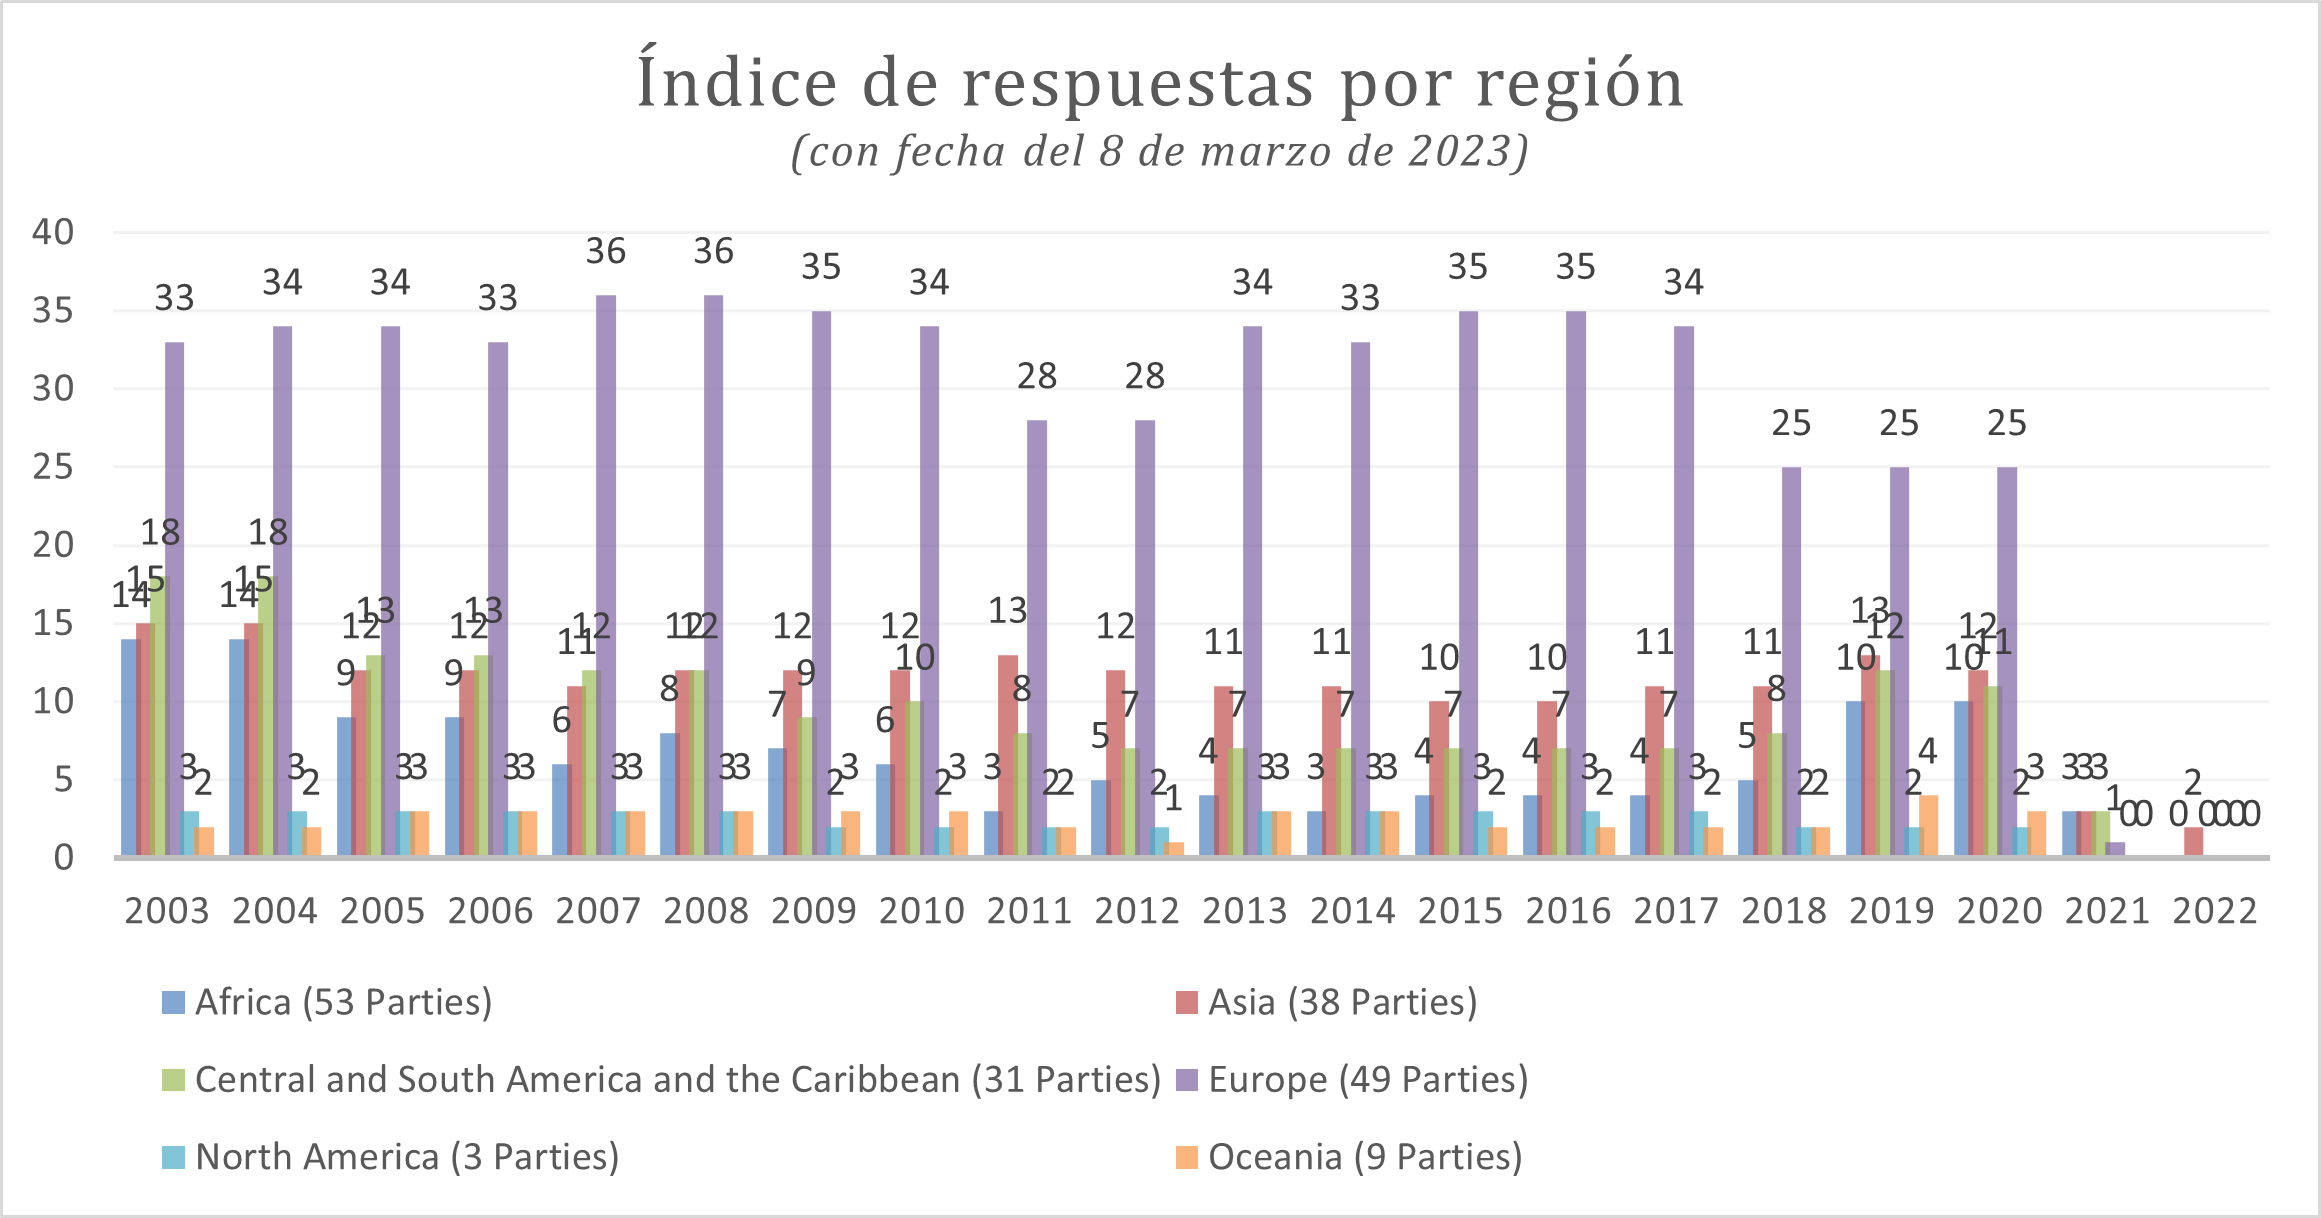 Indice de respuestas por region (con fecha de 8 de marzo de 2023)